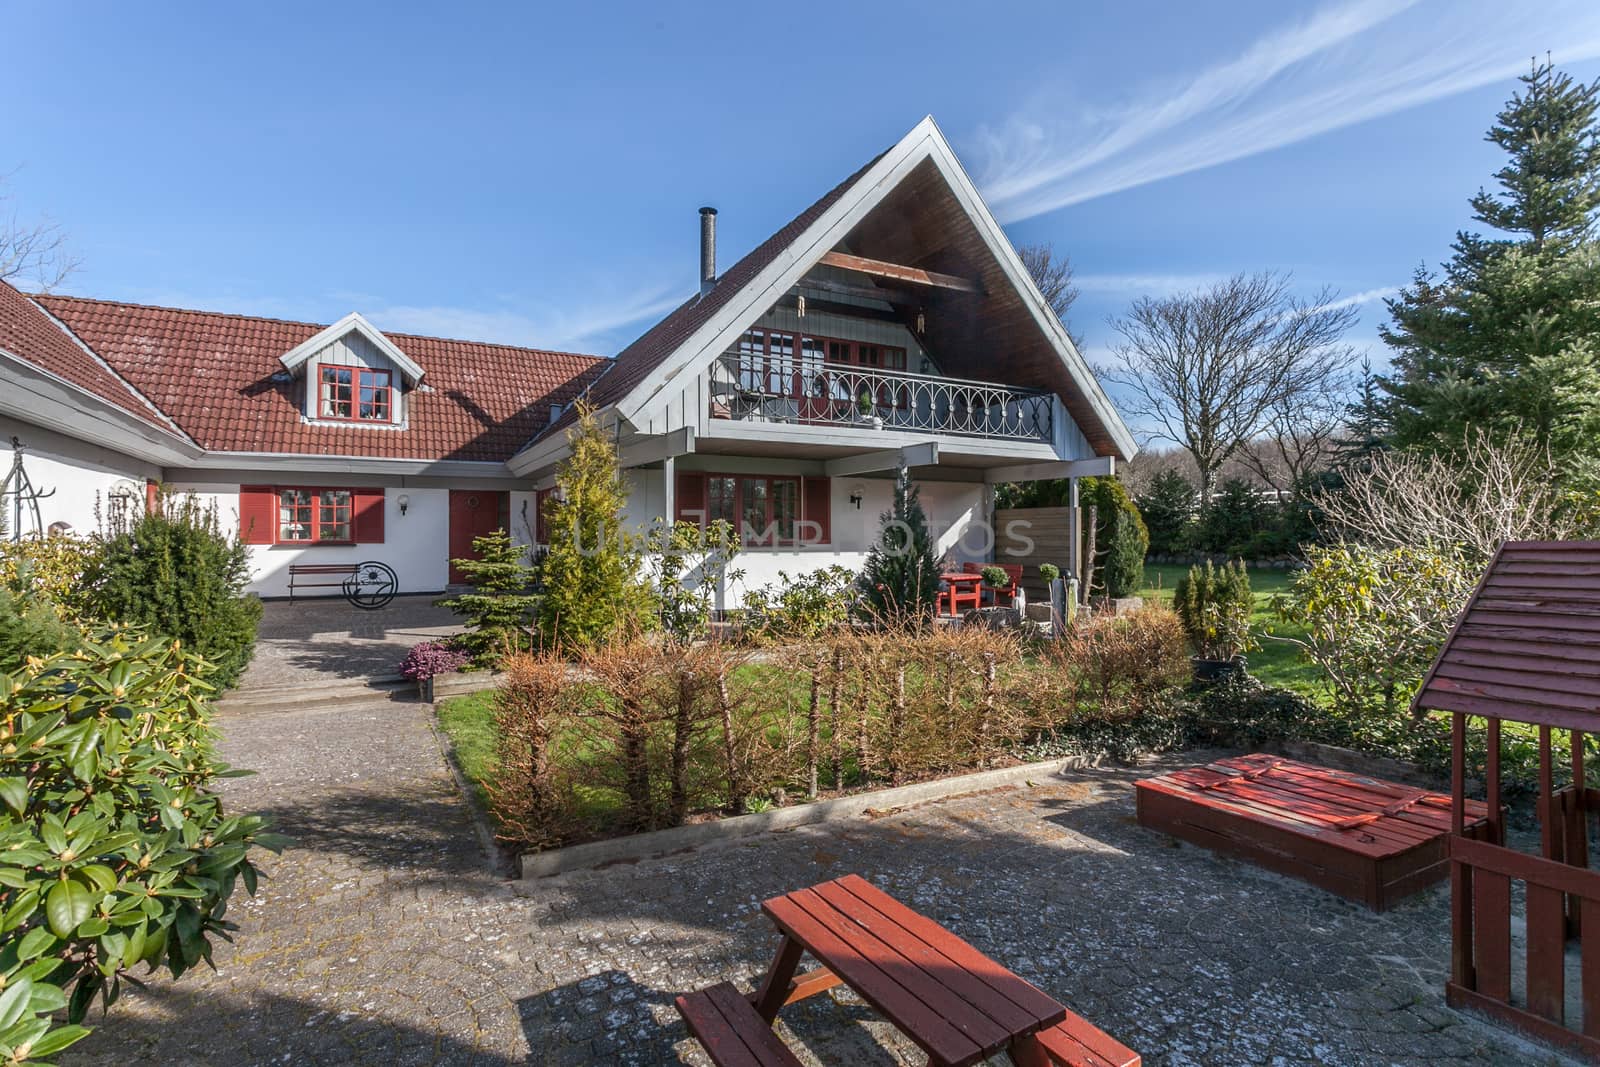 Danish farm house by jasonvosper